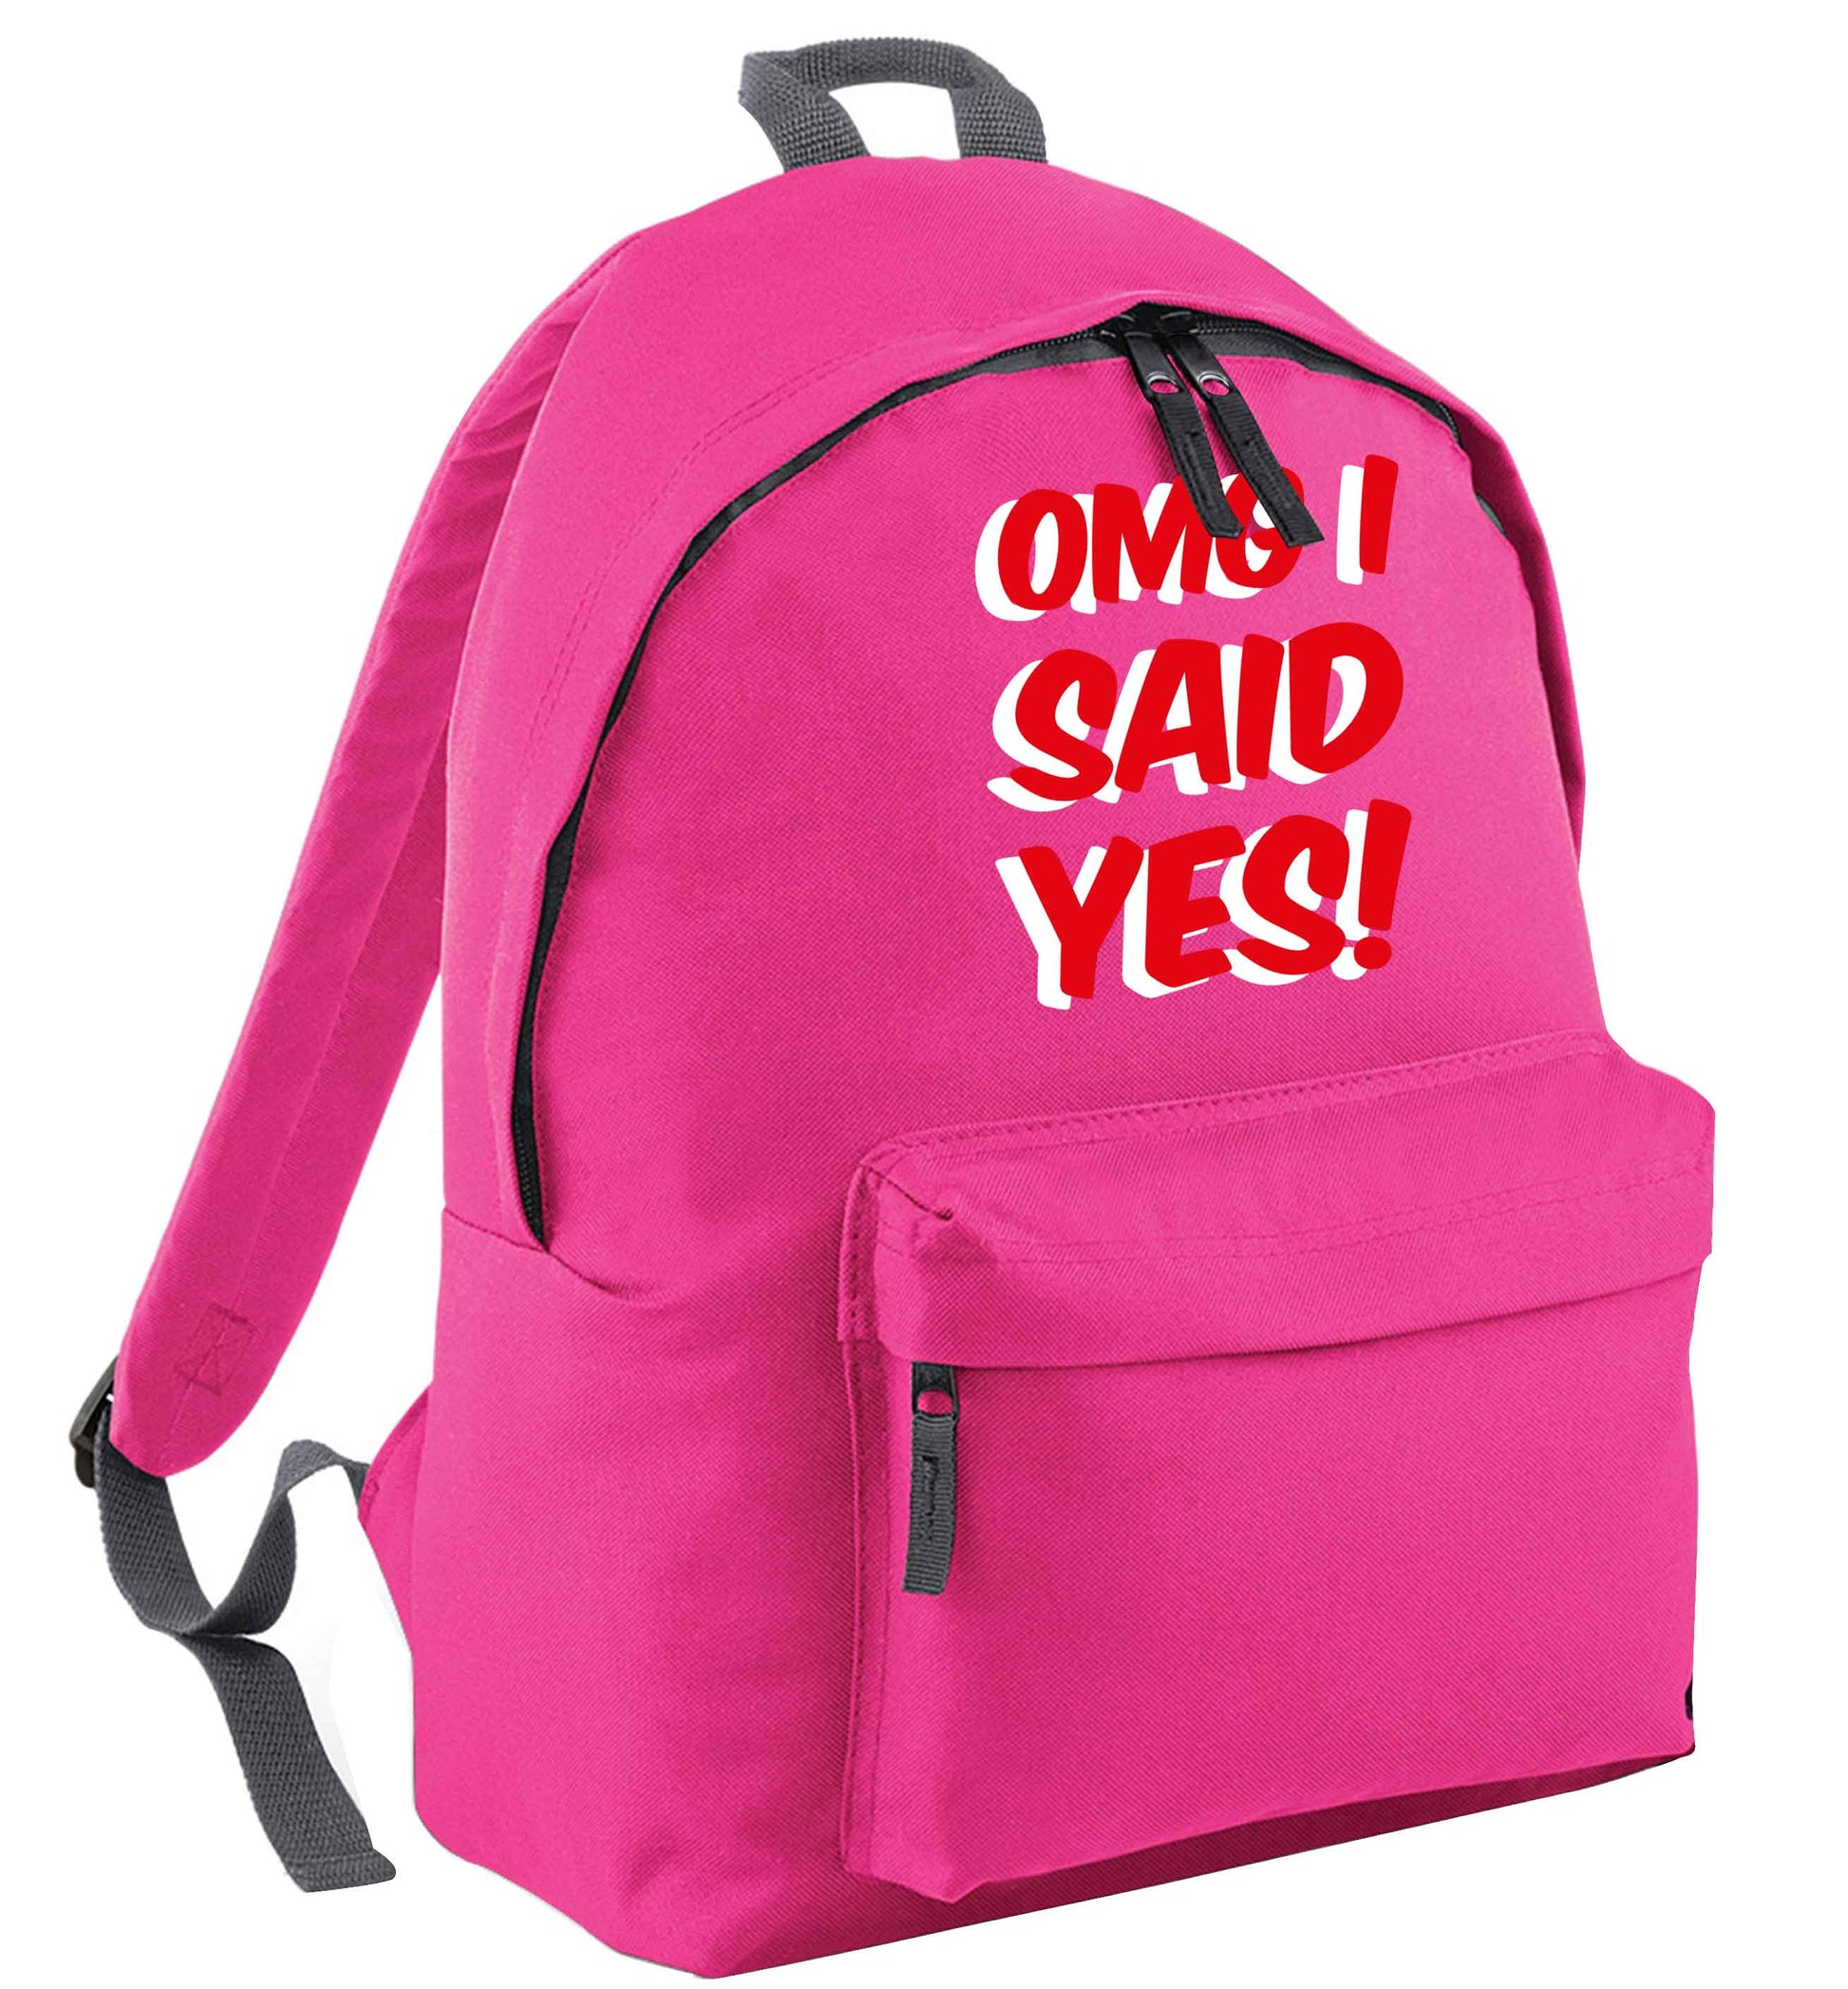 Omg I said yes pink adults backpack